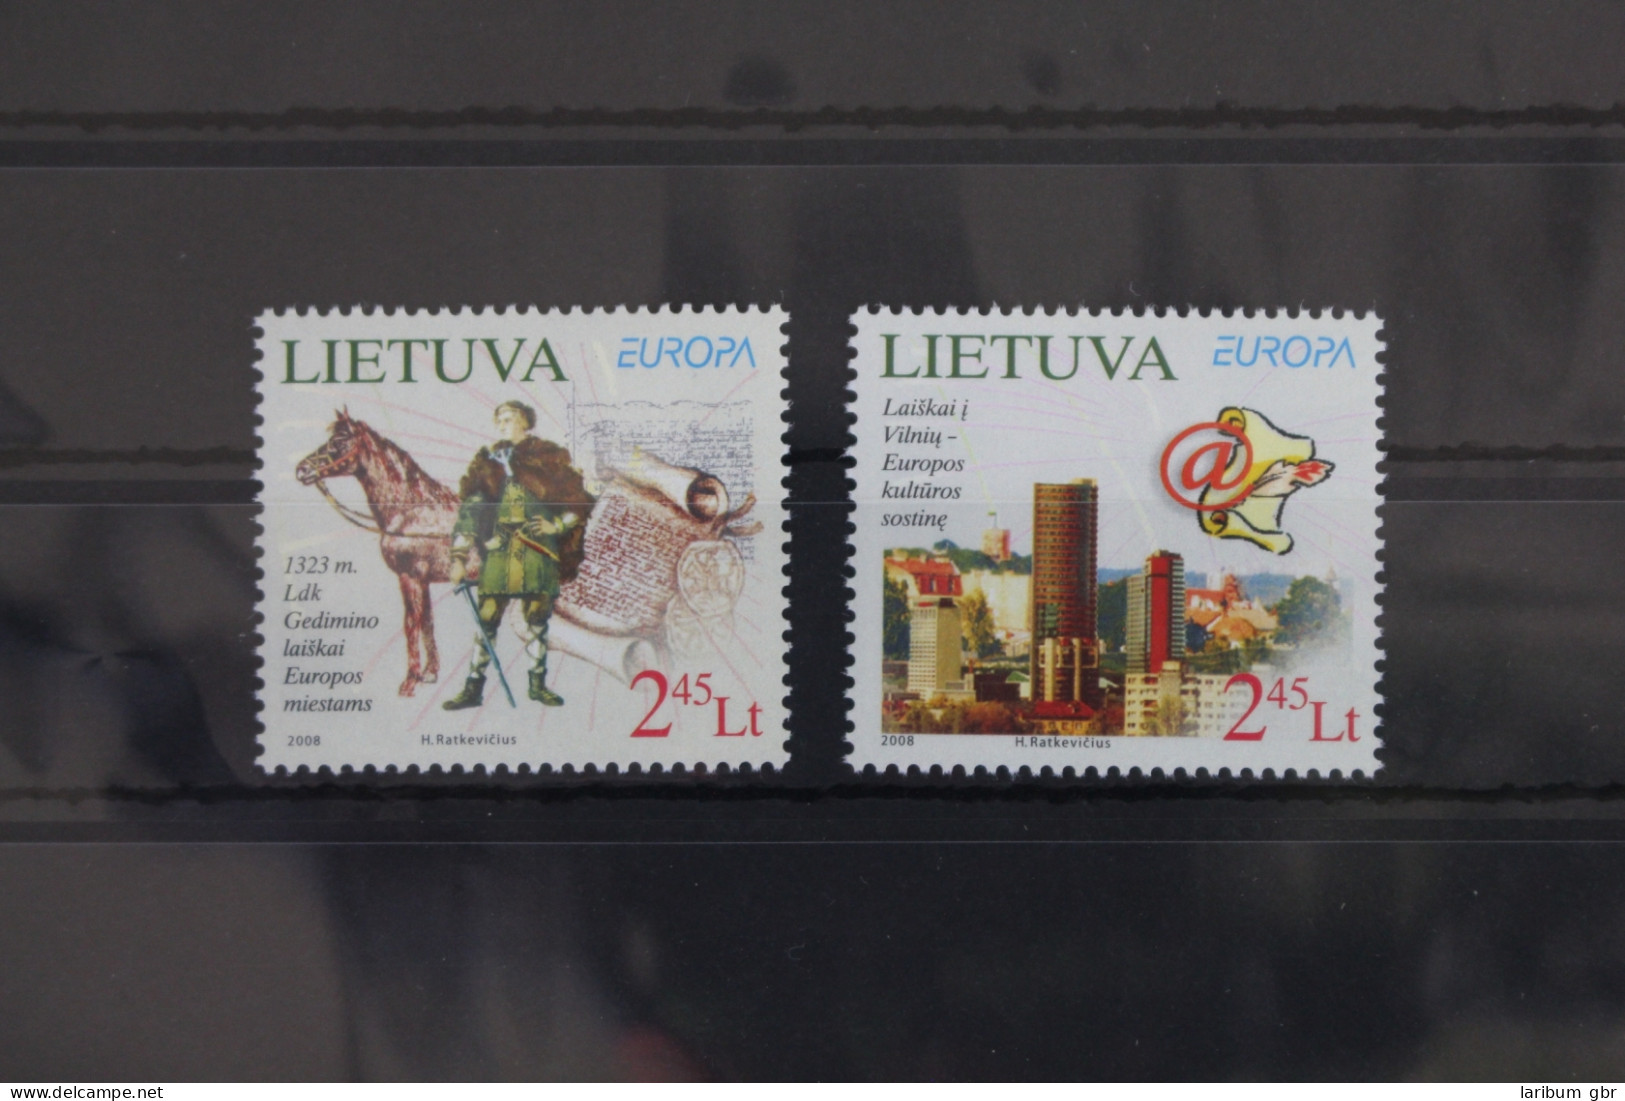 Litauen 970-971 Postfrisch Europa Der Brief #VT333 - Lithuania